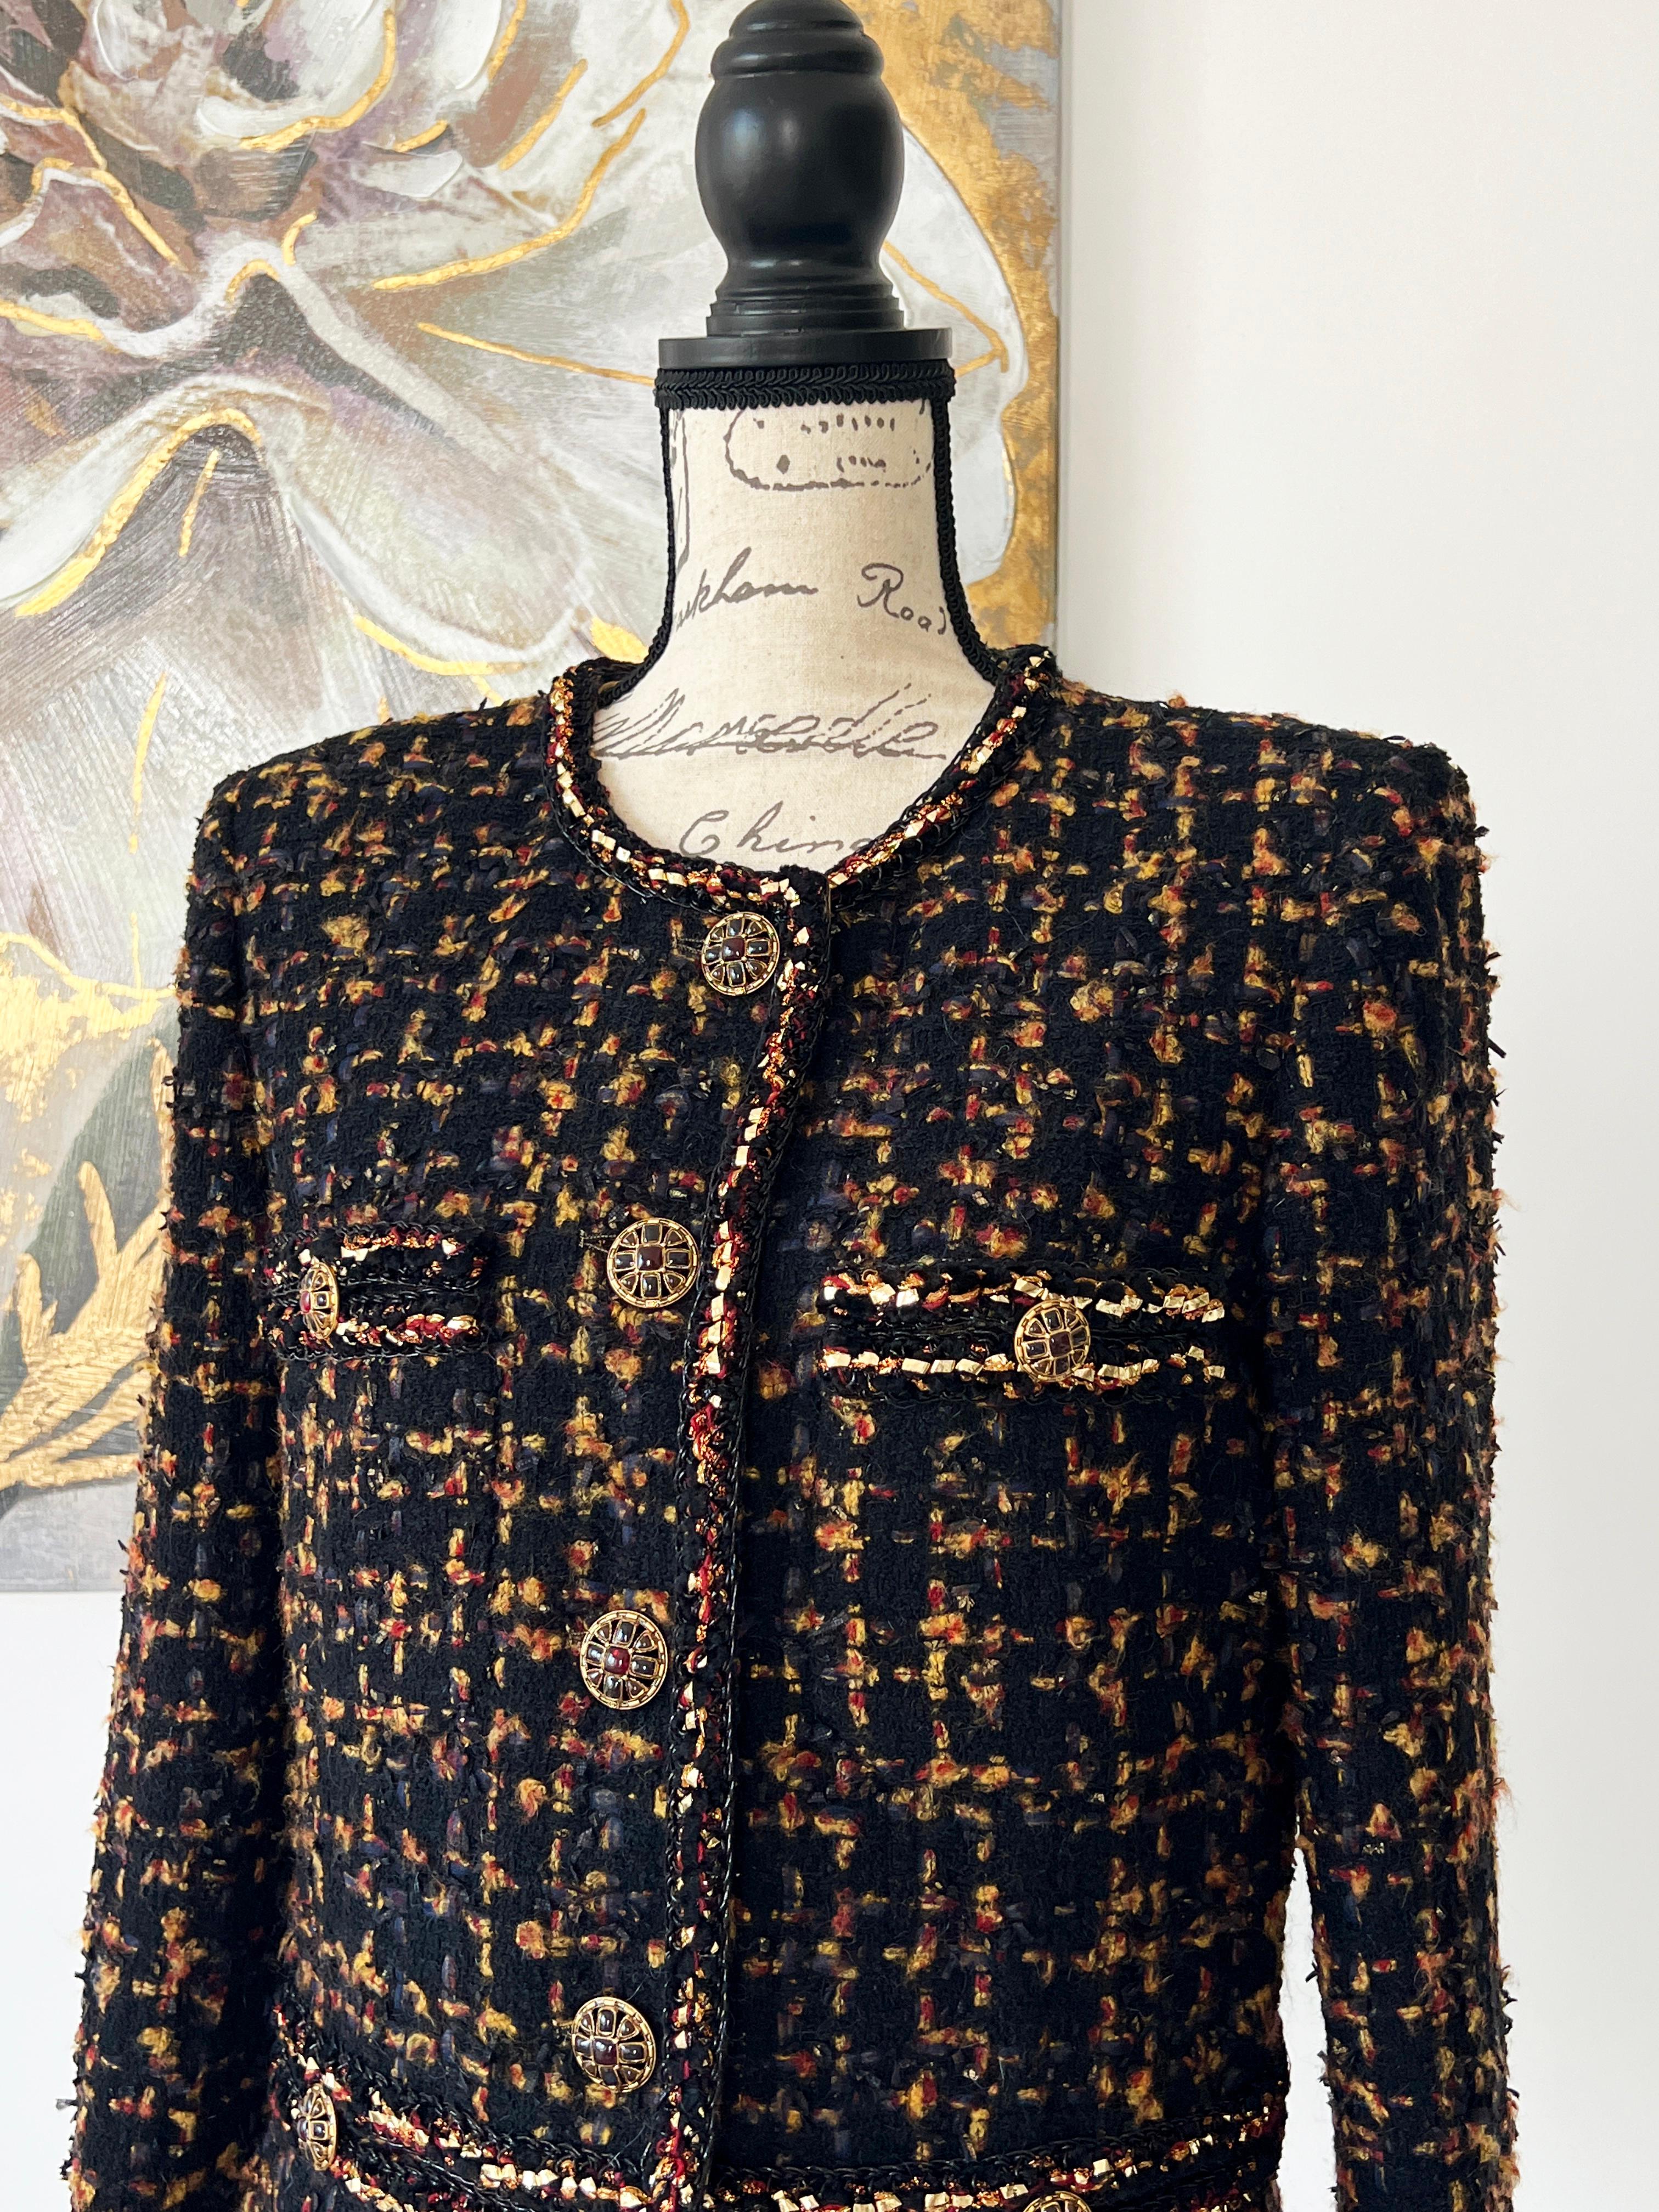 Unmöglich, das irgendwo auf der Welt zu finden!
Meistgesuchte schwarze Tweedjacke von Chanel aus der Pre-Fall 2019,
Paris / New-York Metiers d'Art Collection - die allerletzte Metiers Collection von Karl Lagerfeld.
Ein wahres Kunstwerk, das von den